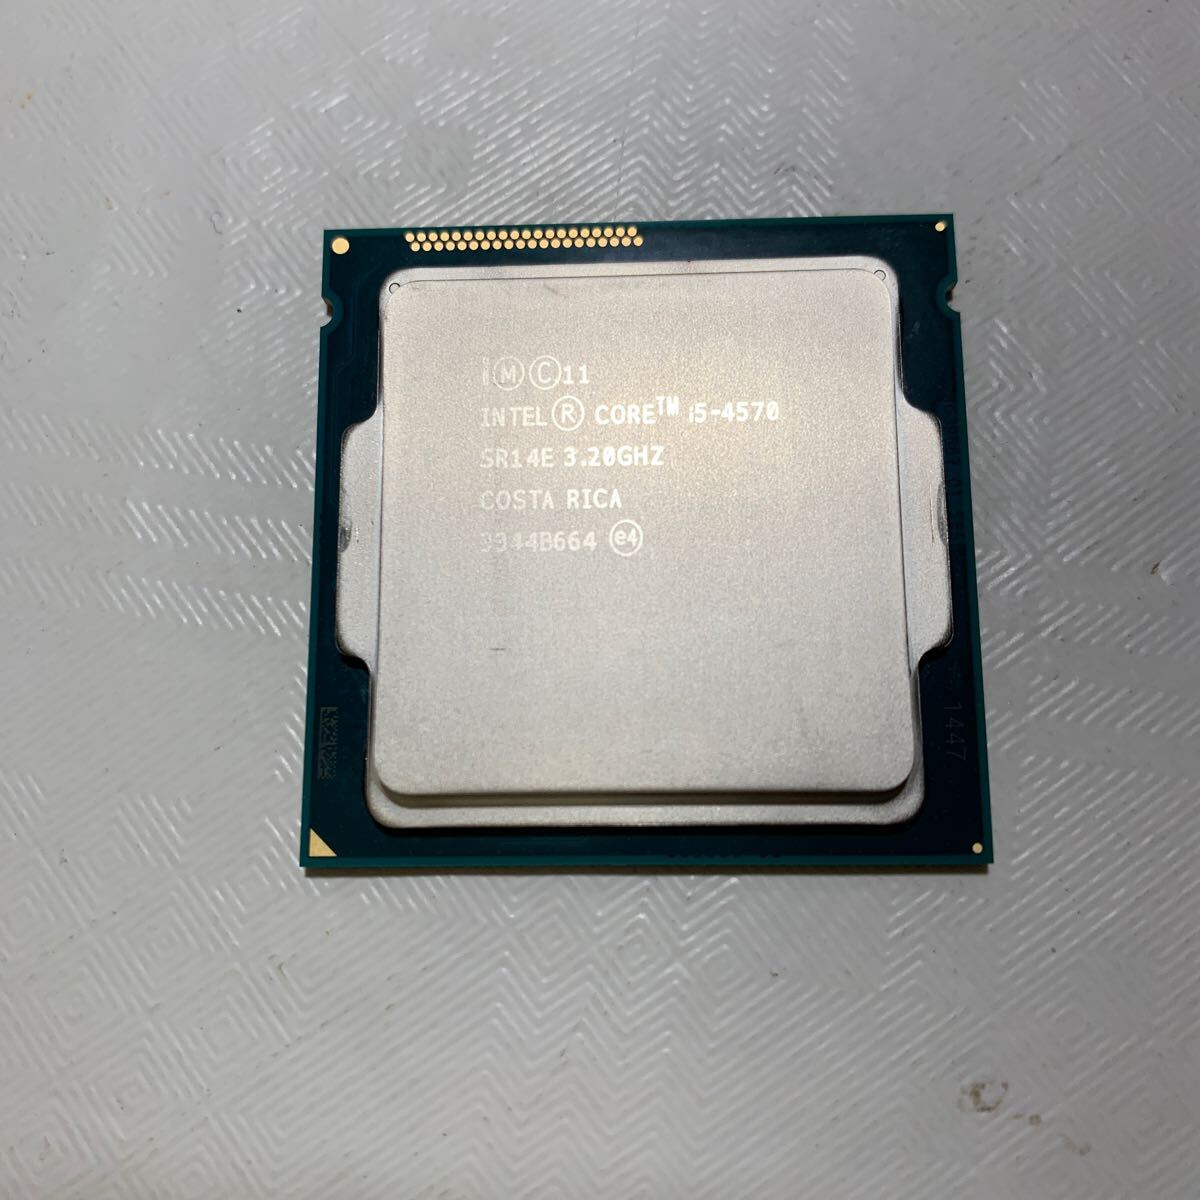 CPU プロセッサー Intel CORE i5-4570 SR14E 3.20GHz COSTA RICA 3344B664_画像1